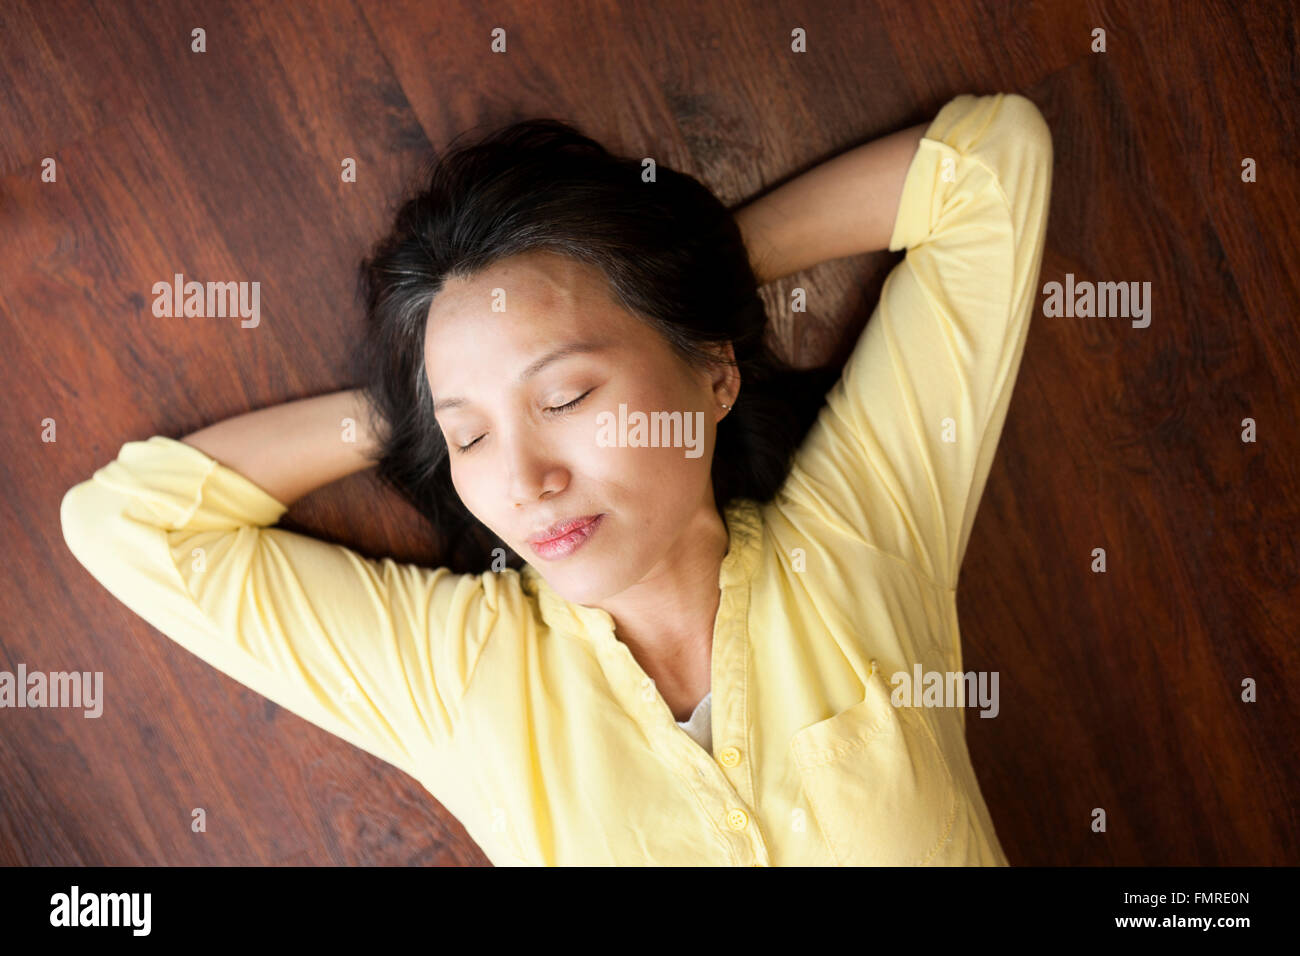 Une femme asiatique semble prendre une courte sieste sur le sol. Banque D'Images